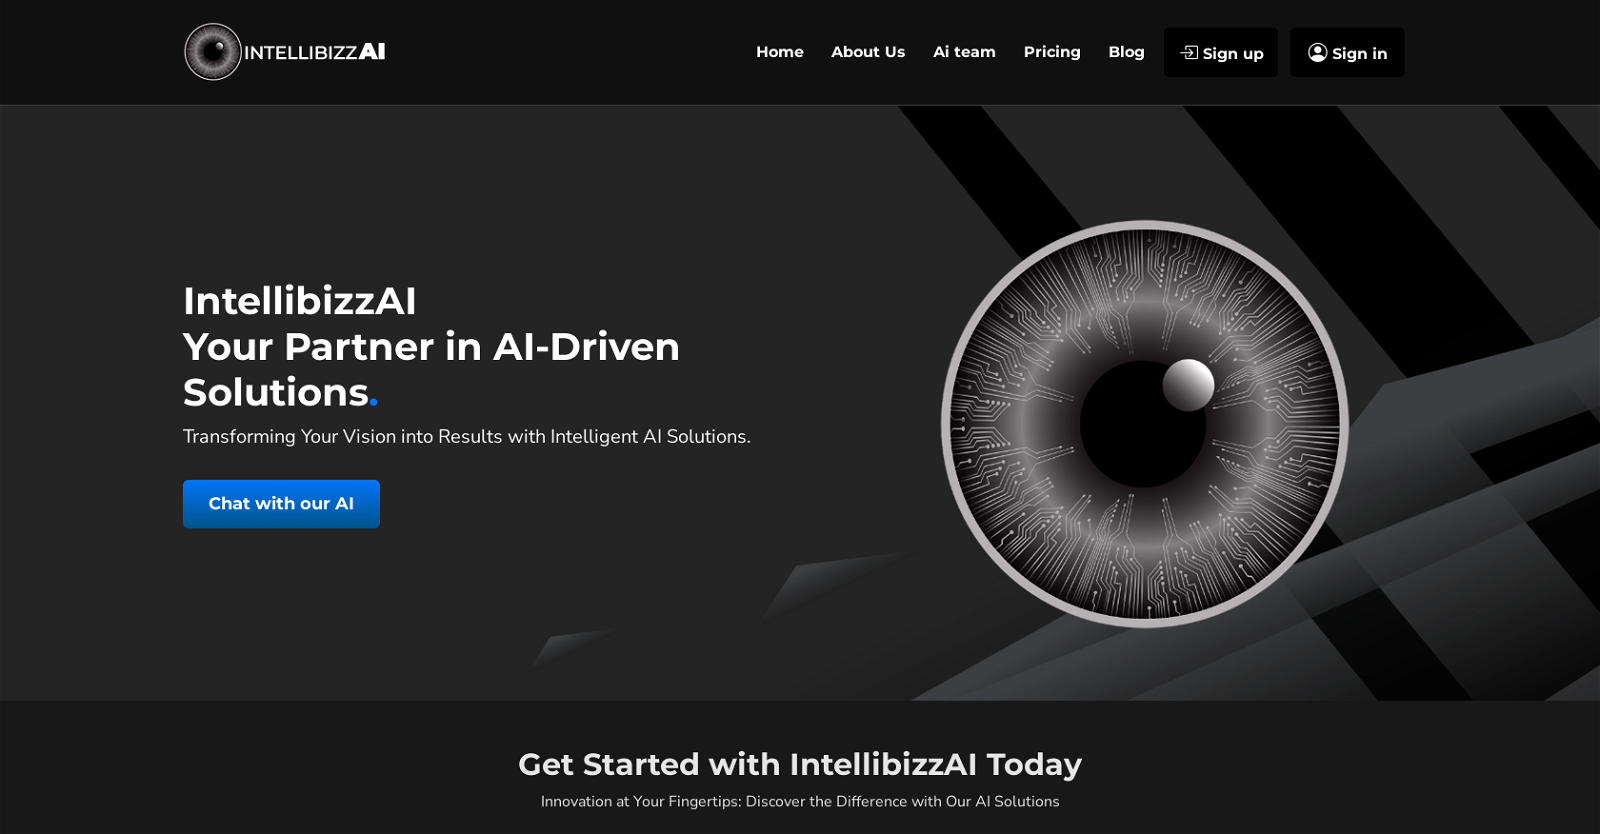 IntellibizzAI website